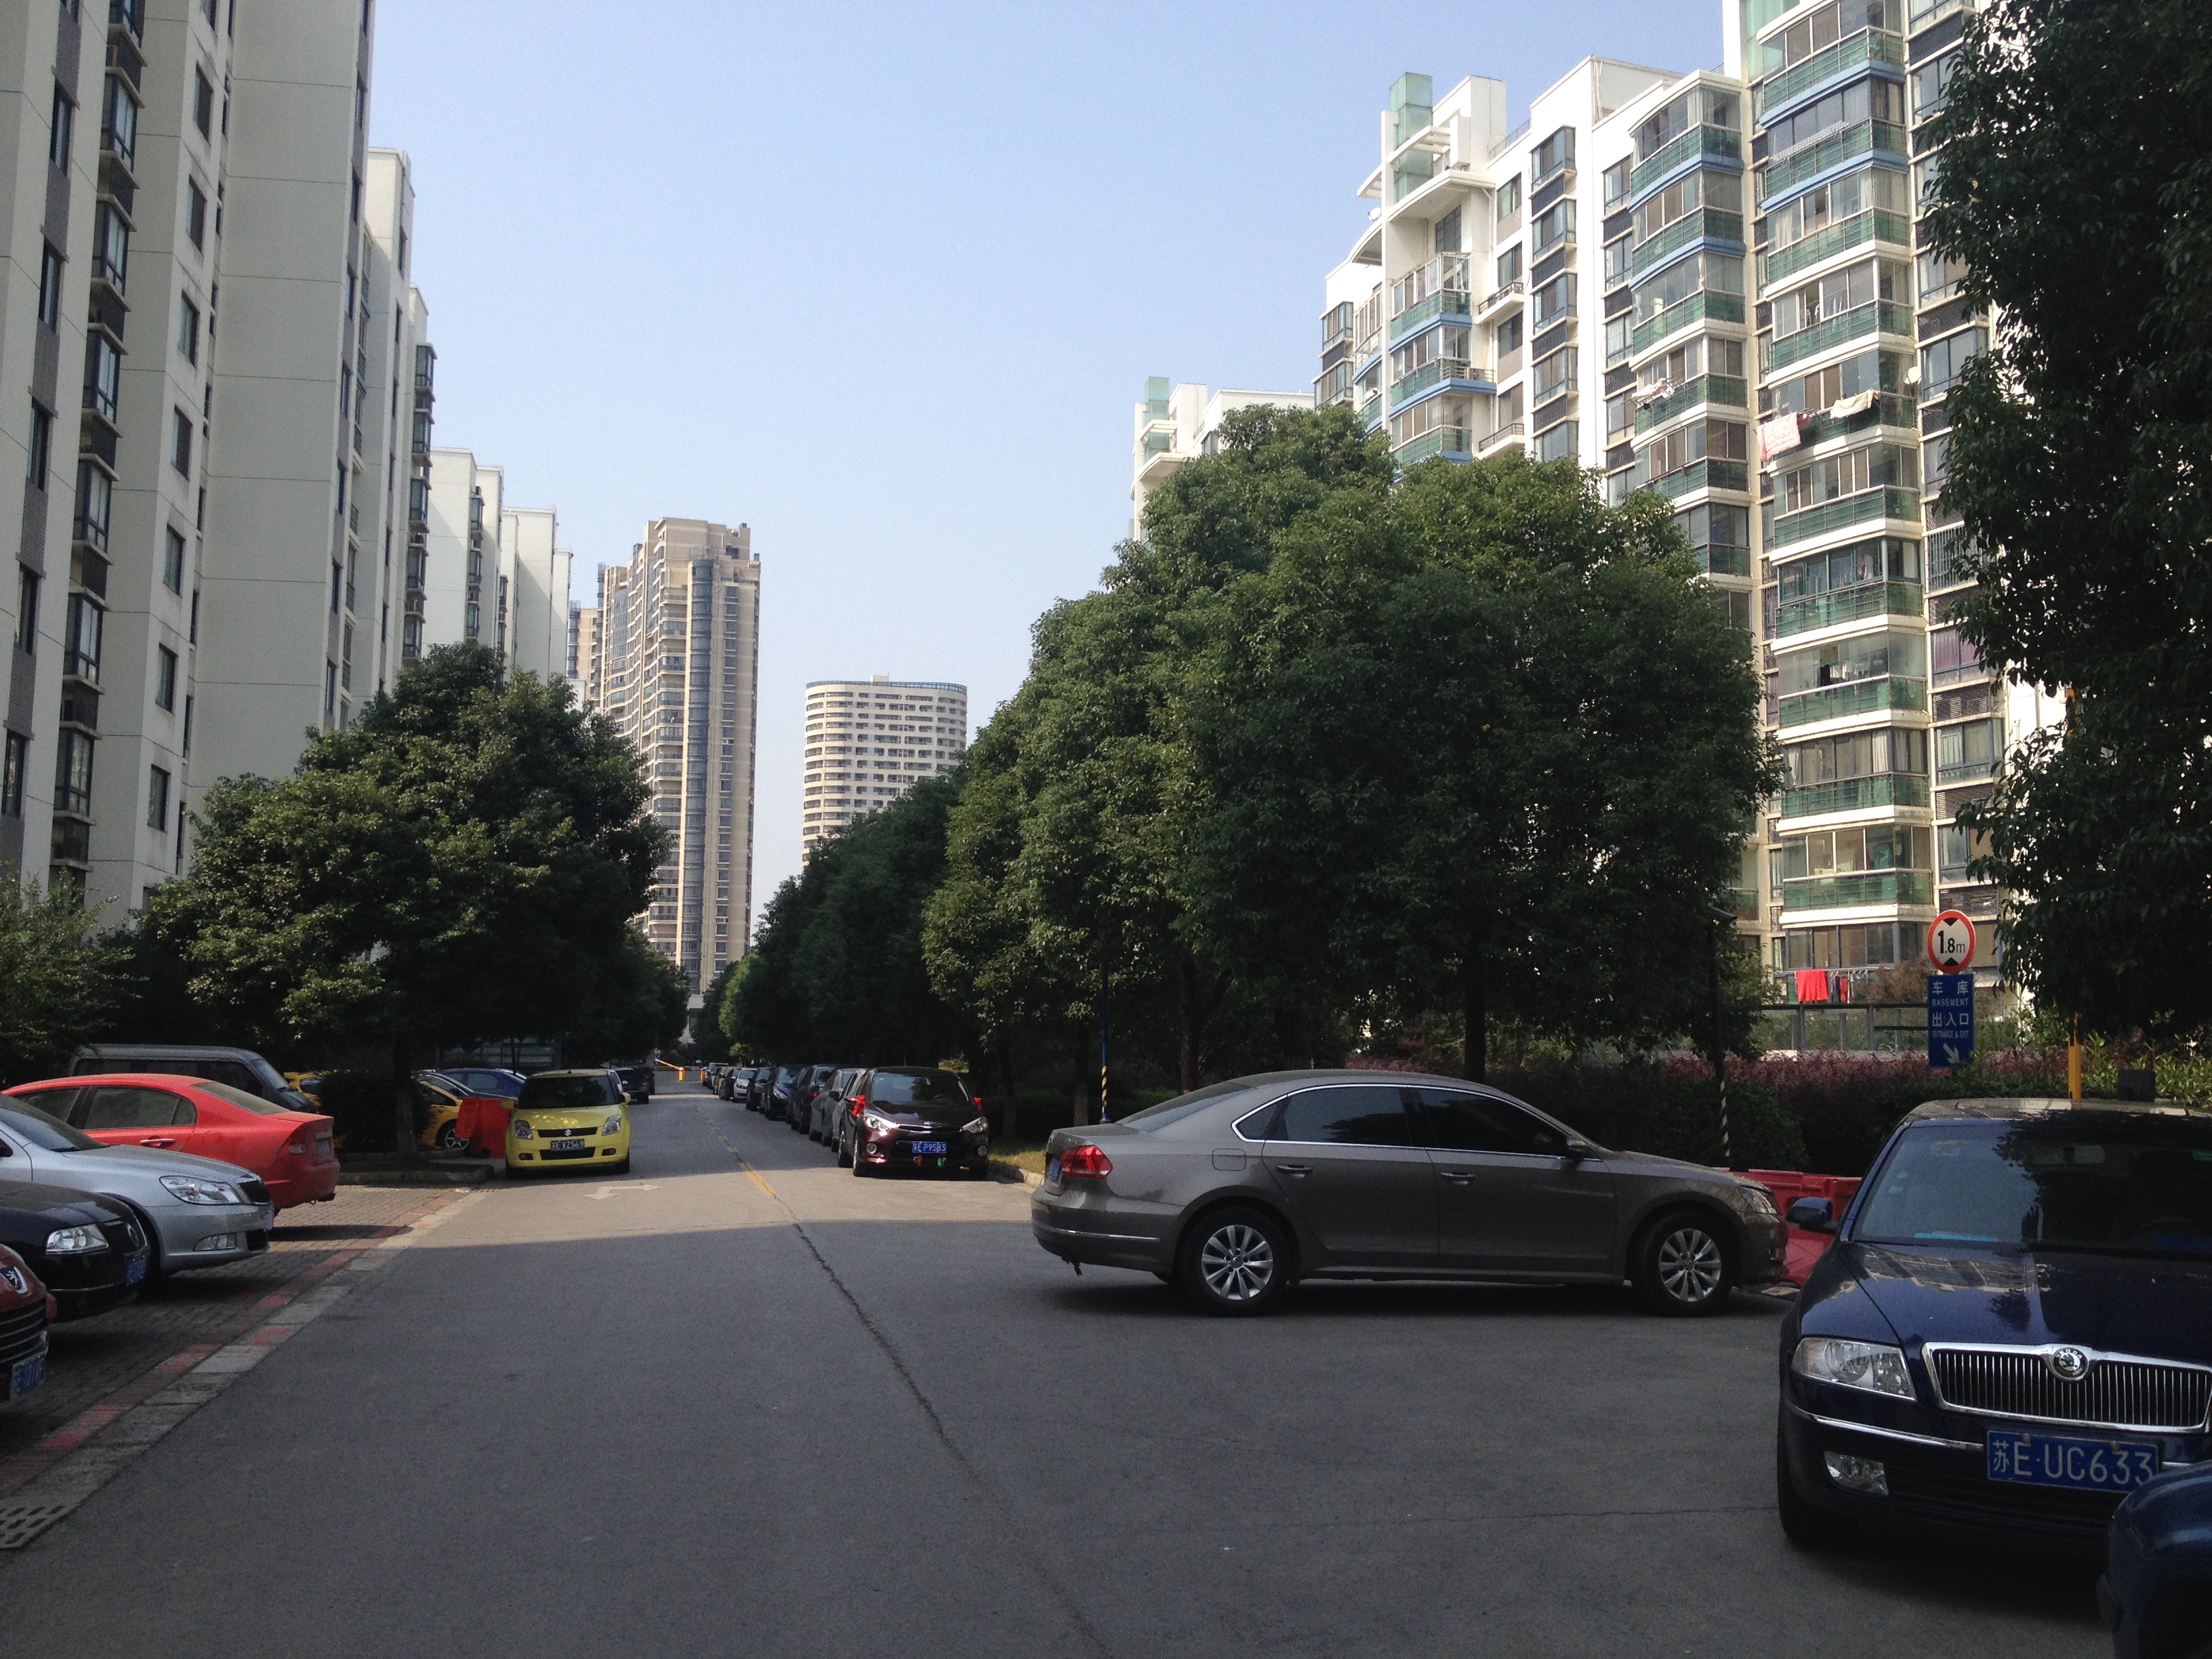 上海城 2室2厅2卫 101平方米 136万出售